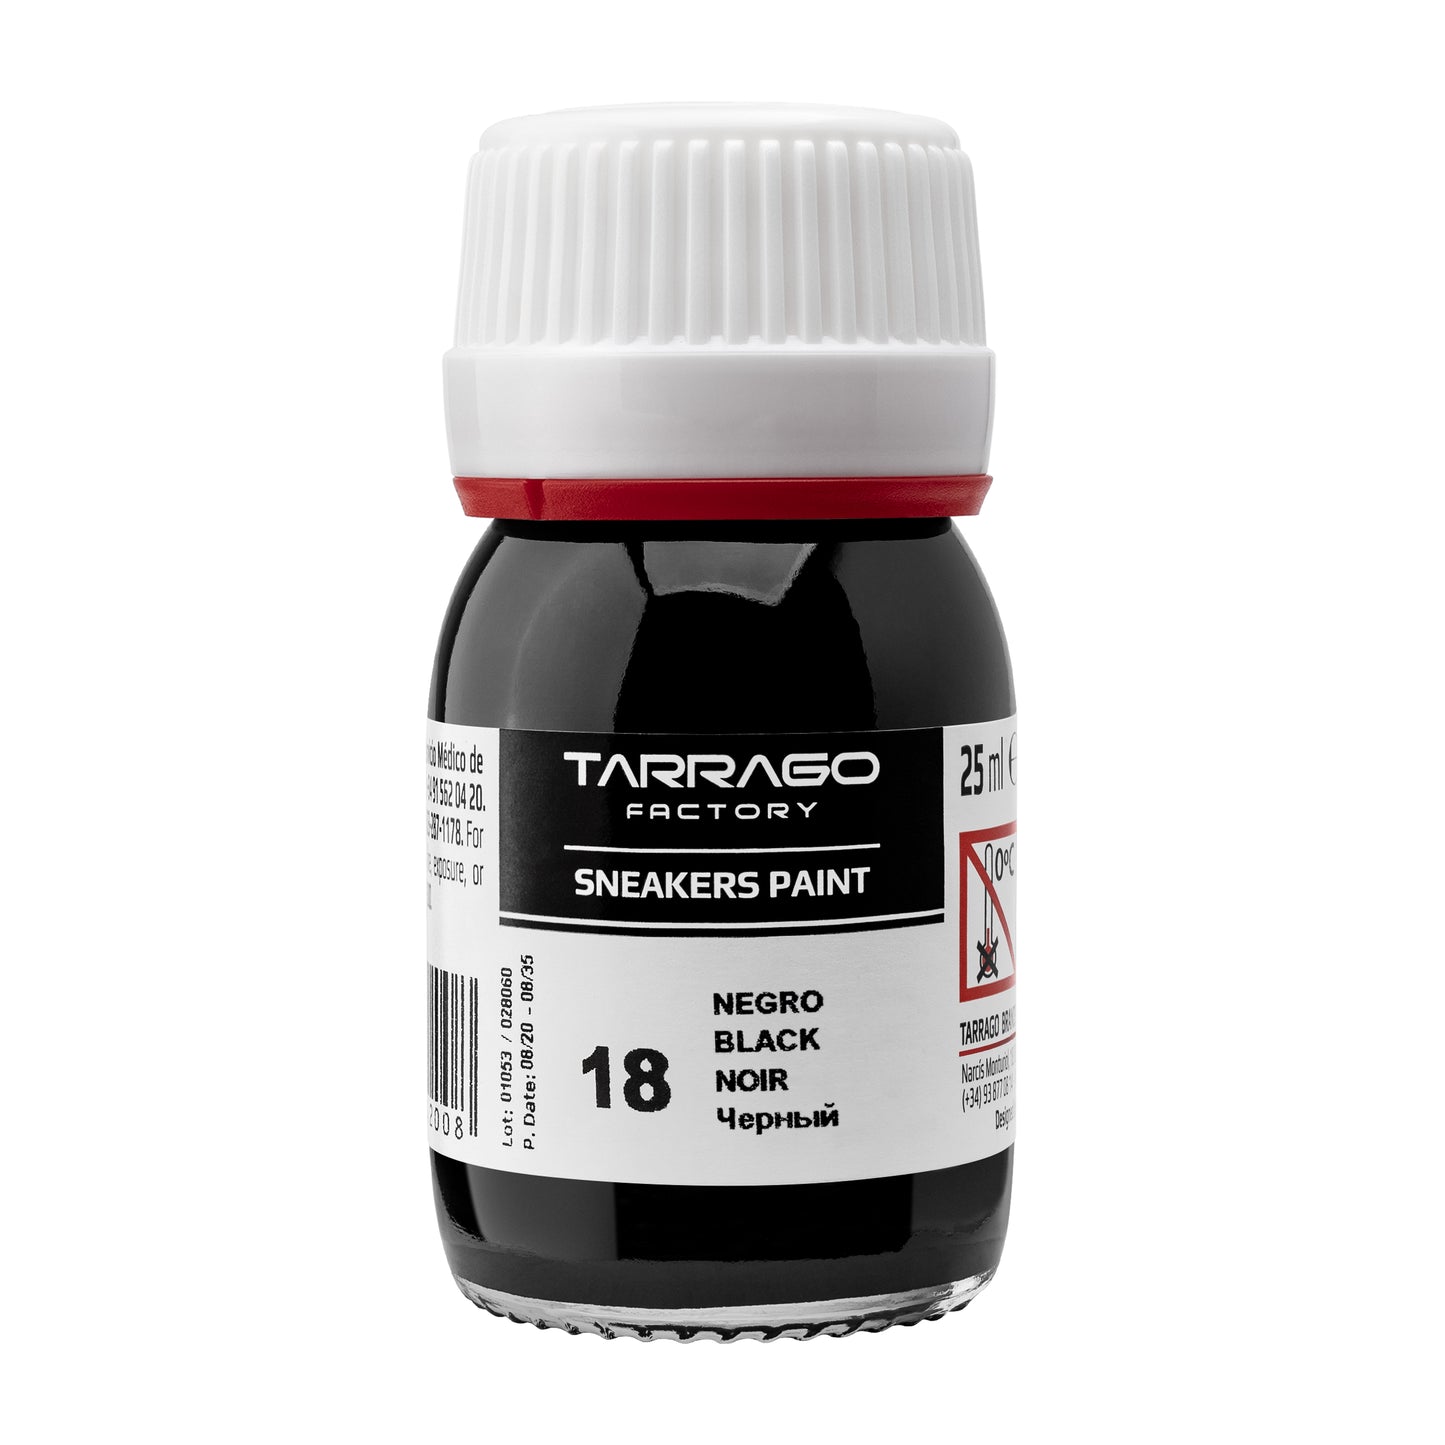 TARRAGO - SNEAKER PAINT - STANDARD COLOURS - 25ml